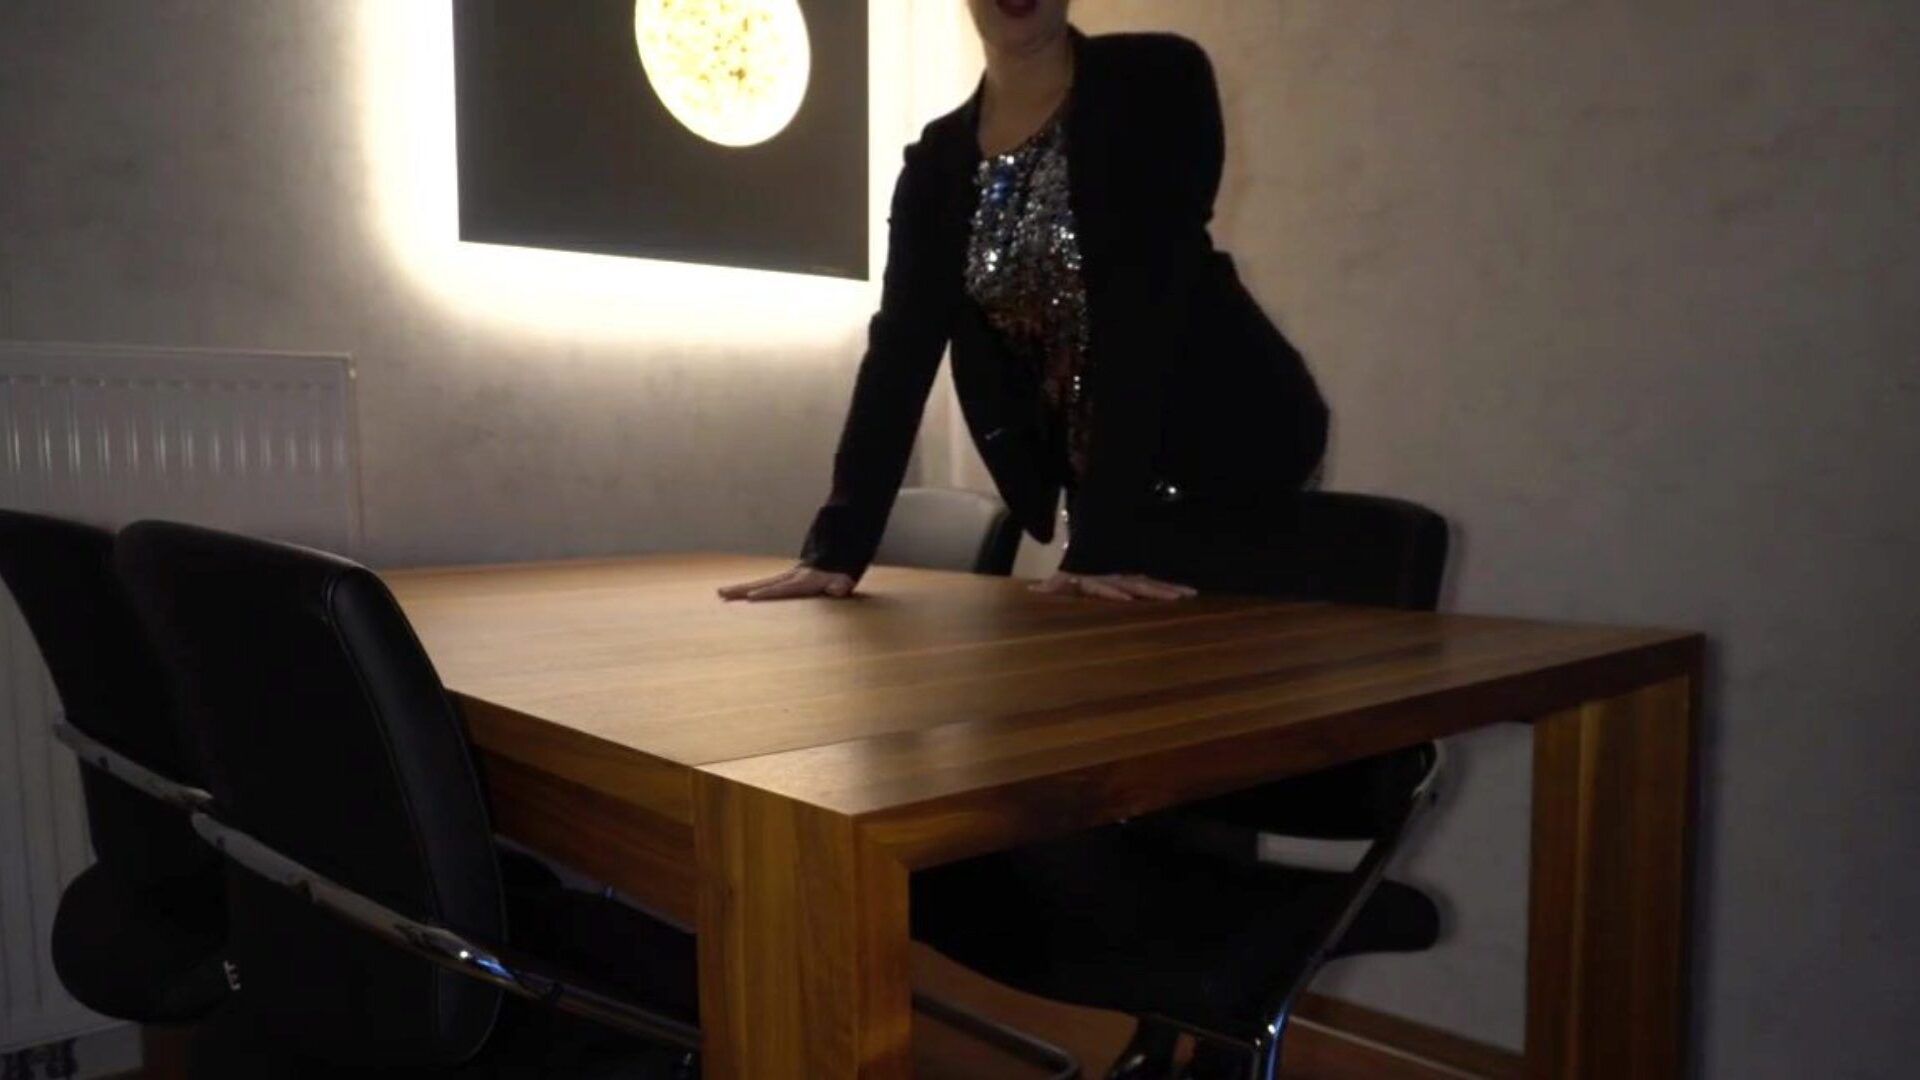 il capo scopa la segretaria analmente sul tavolo ... guarda il capo scopa la segretaria analmente sul tavolo - episodio di cagna d'affari su xhamster - la raccolta definitiva di video porno hd di milf danesi gratuiti